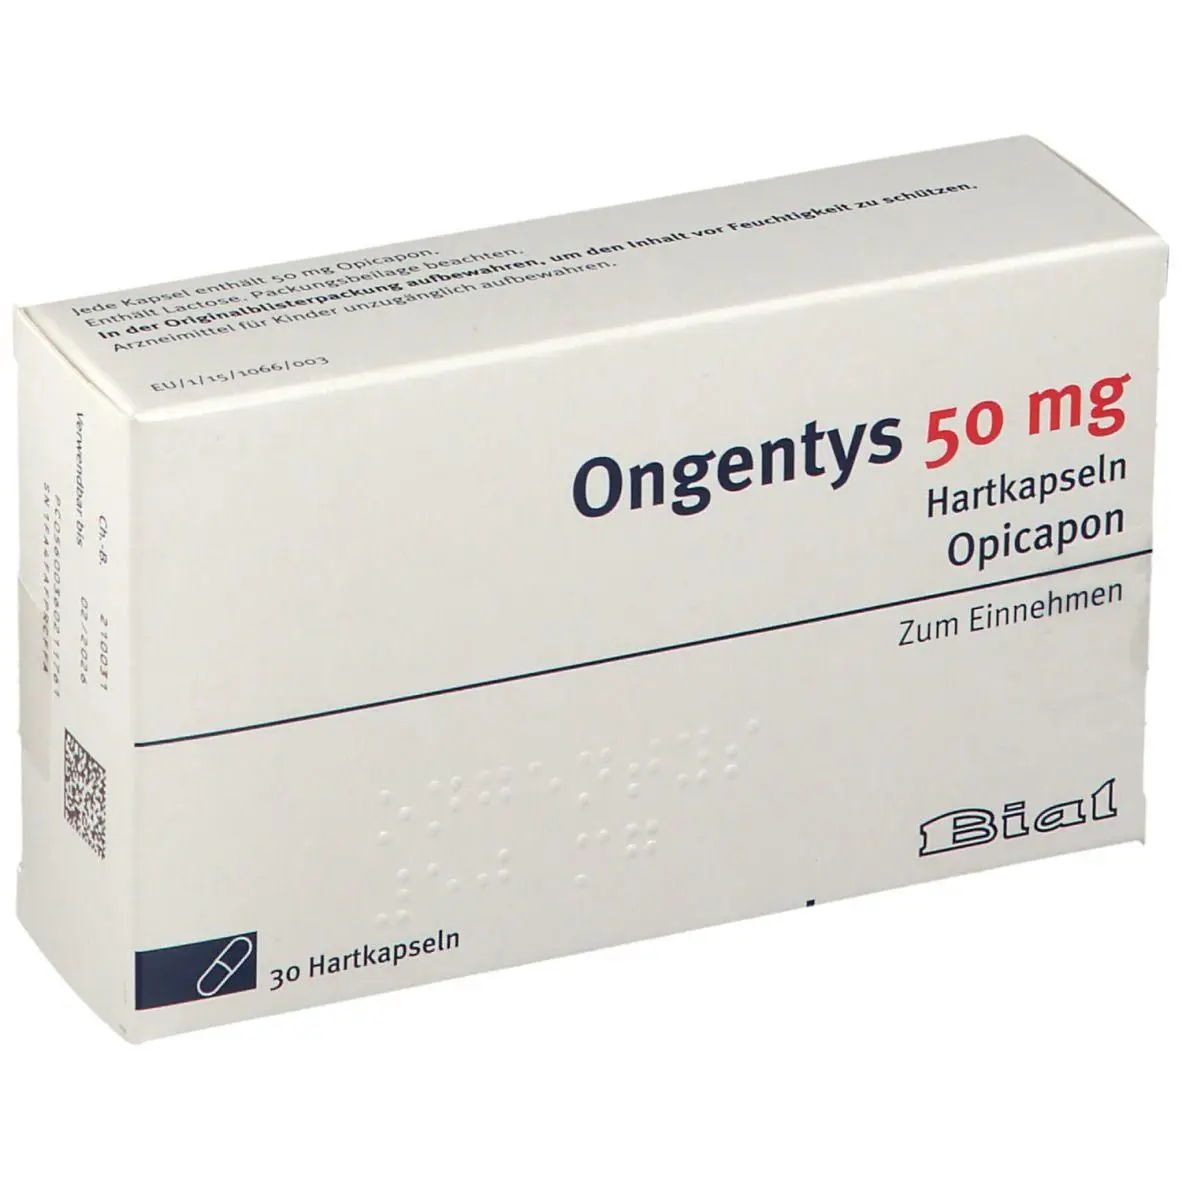 葡萄牙BIAL生产的阿片哌酮（别名：奥匹卡朋、opicapone、Ongentys、opicapon）